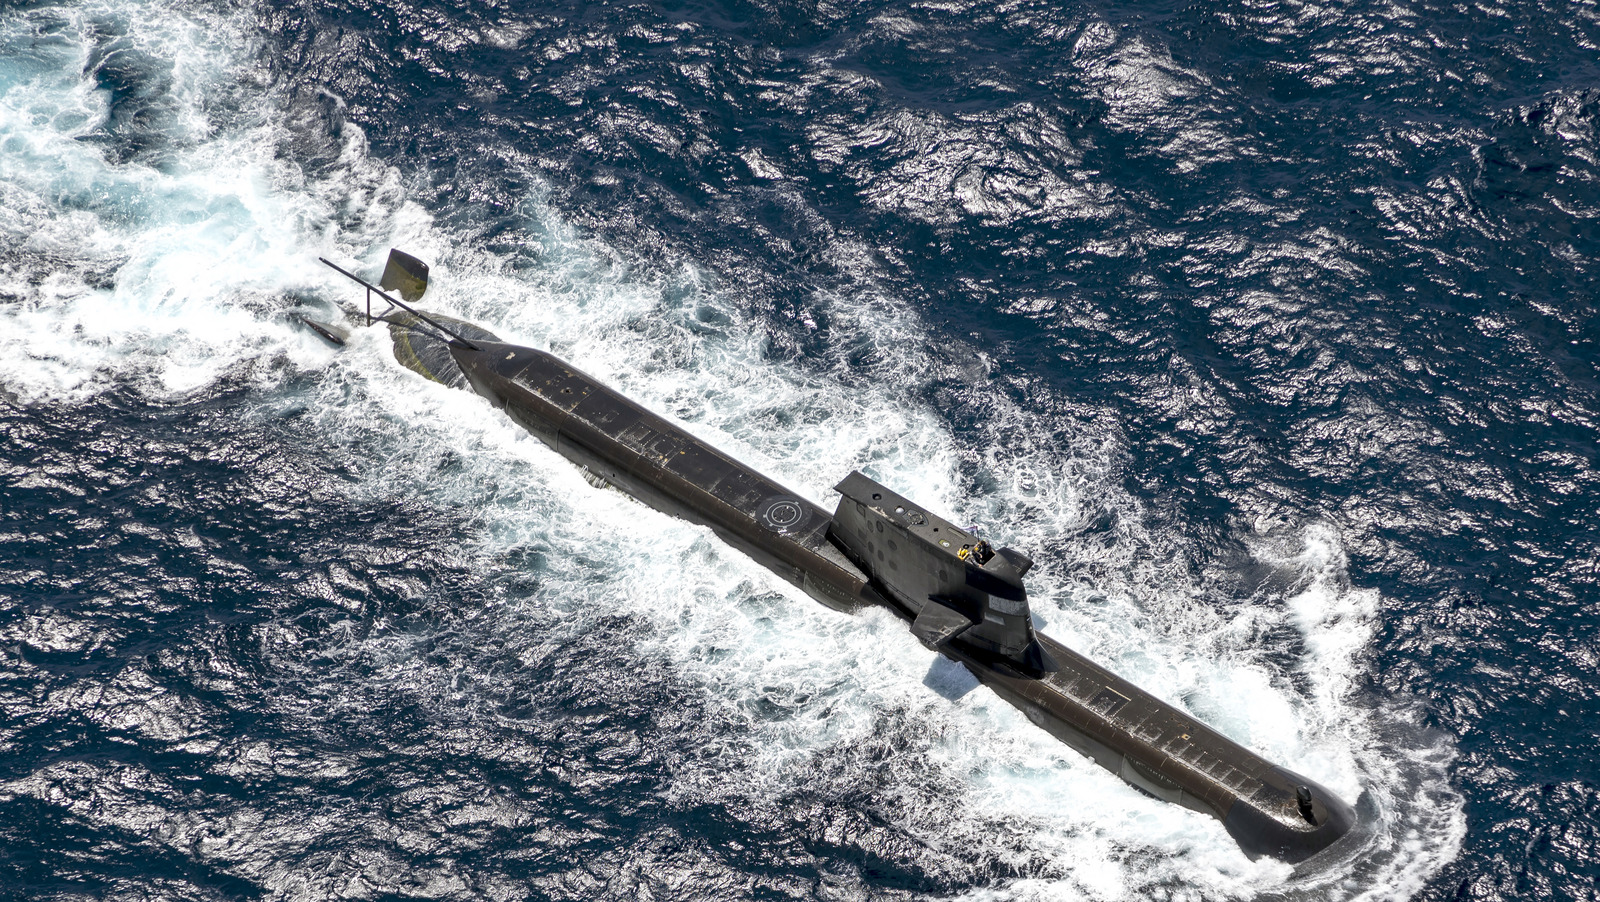 در اینجا نحوه برنامه ریزی نیروی دریایی ایالات متحده برای استفاده از هوش مصنوعی در زیردریایی ها آمده است